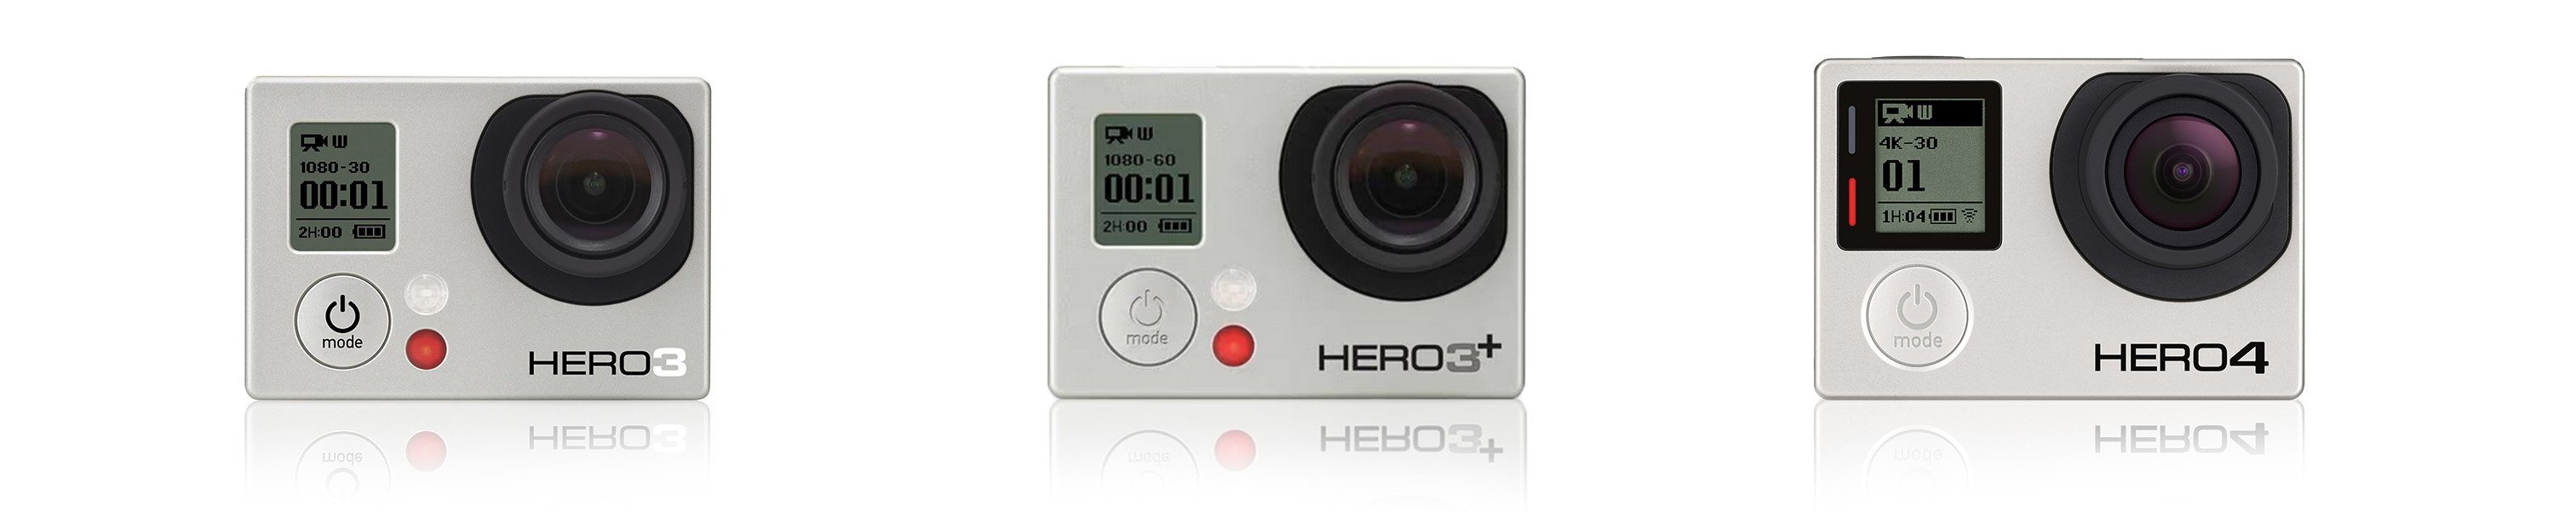 GoPro HERO3, HERO3+, HERO4